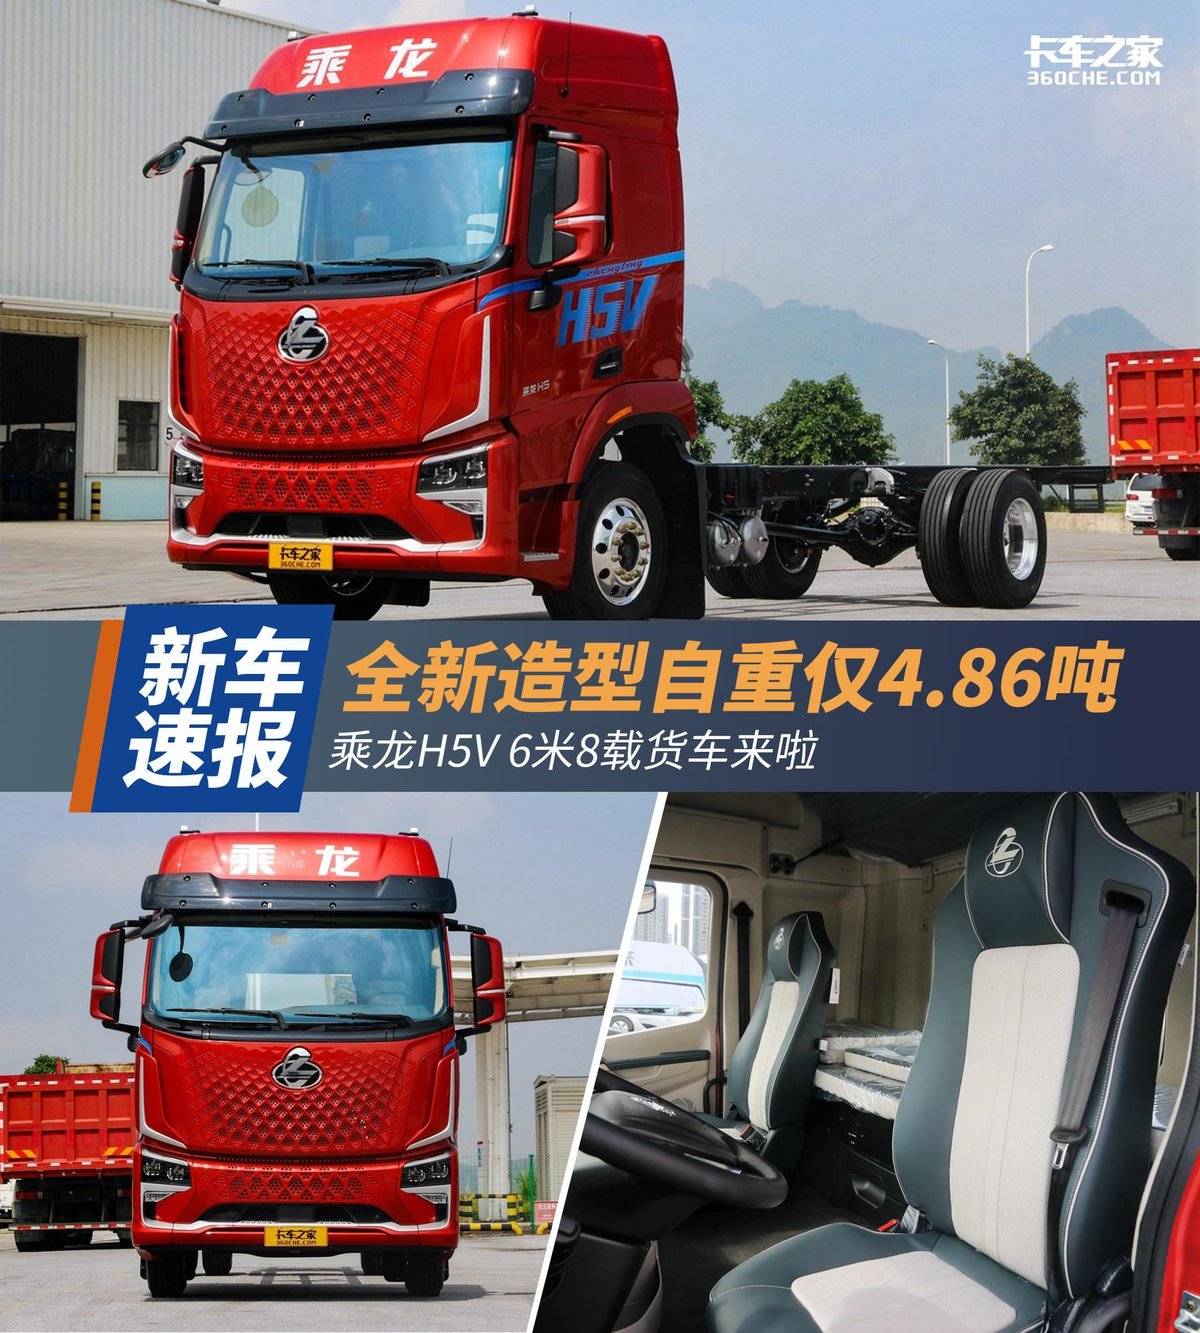 全新造型自重仅4.86吨 乘龙H5V 6米8载货车来啦